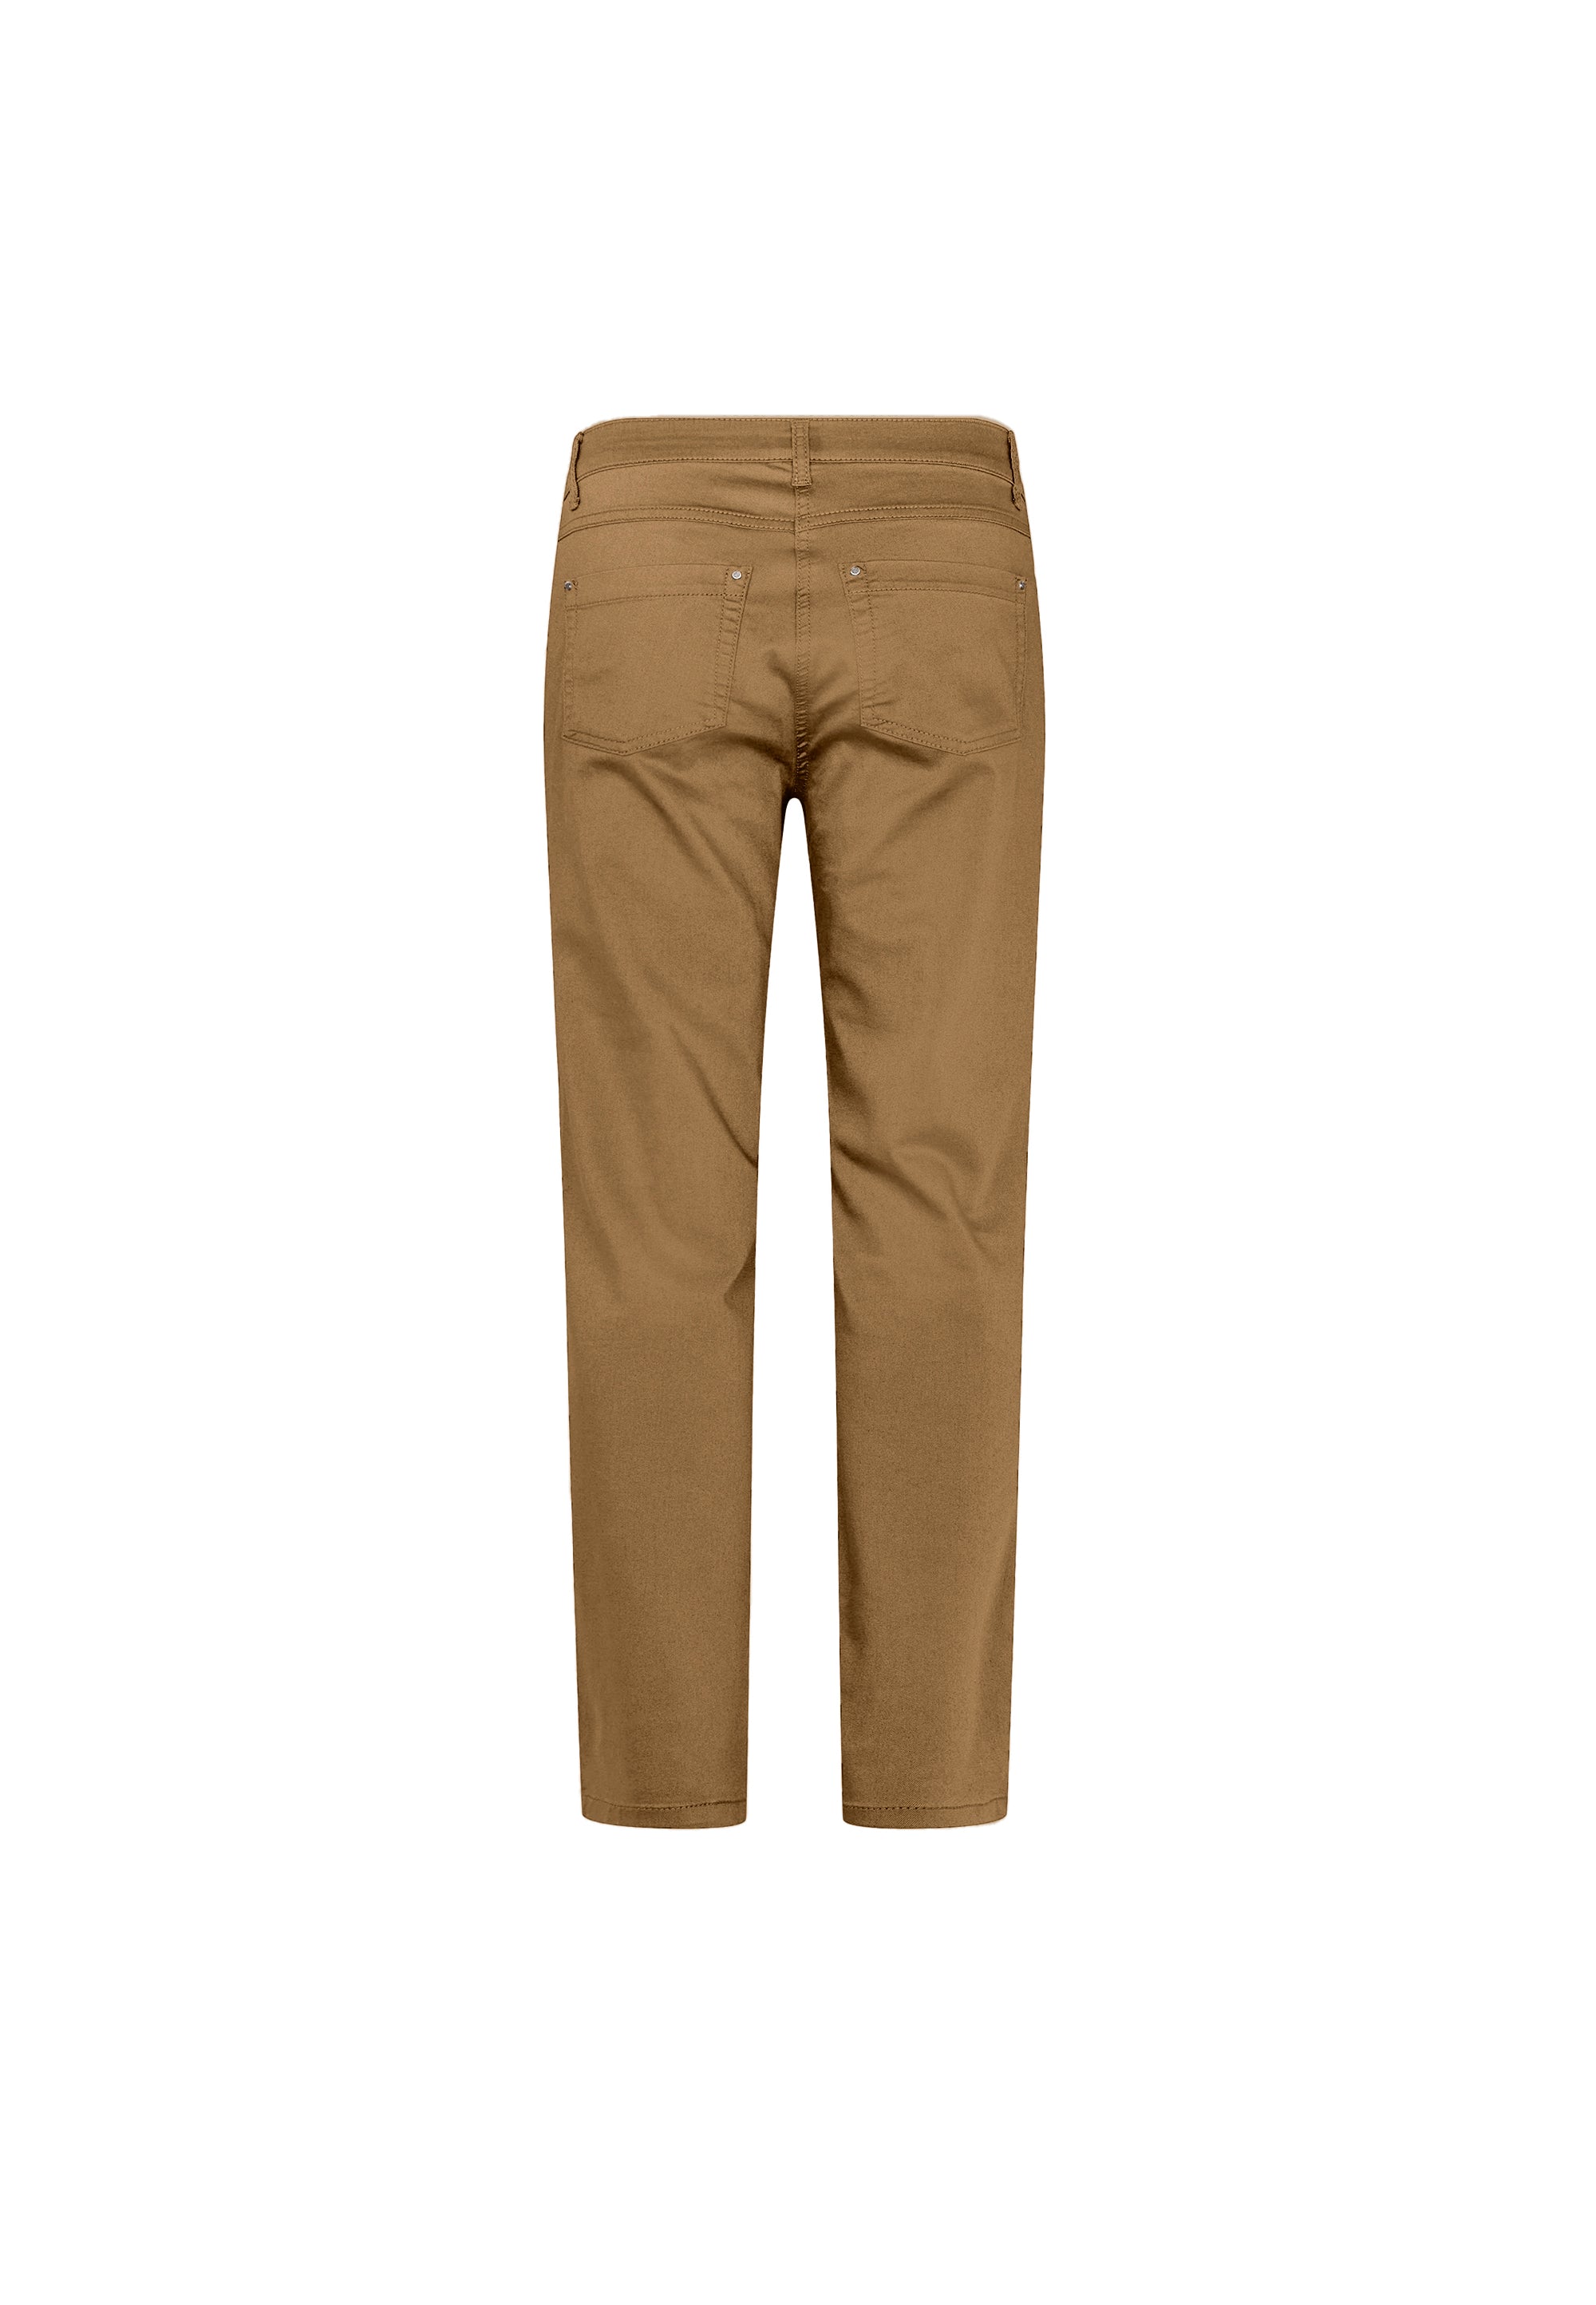 LAURIE Charlotte Regular - Medium Length Trousers REGULAR 85100 Dijon